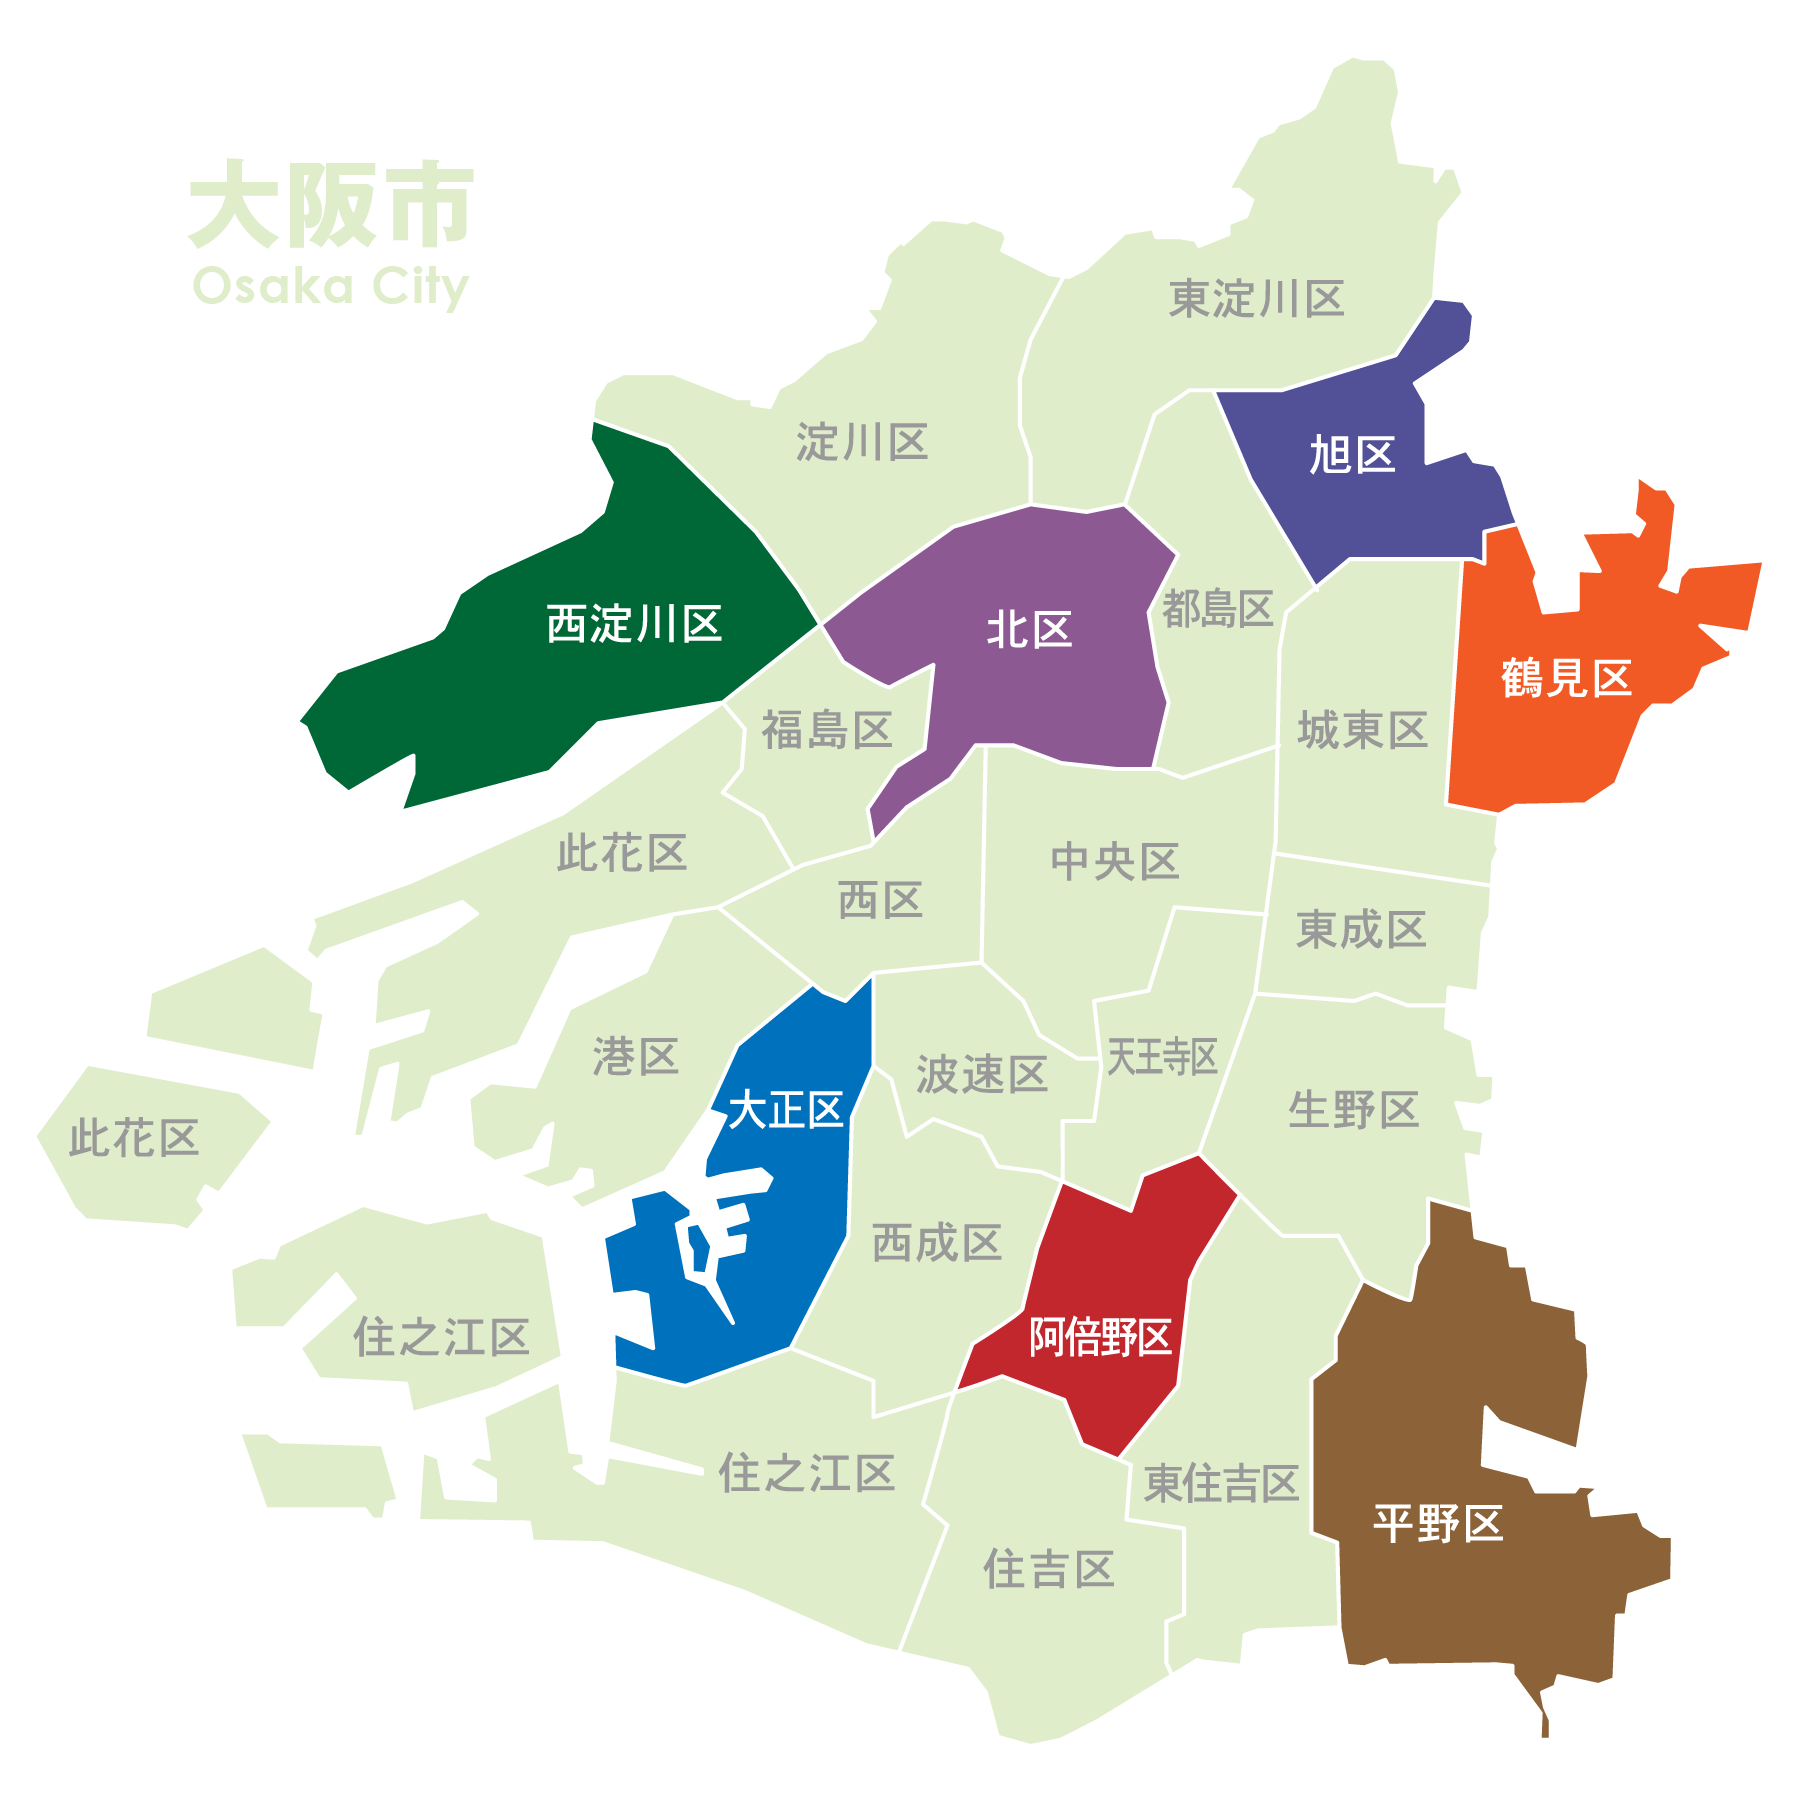 大阪市マップ